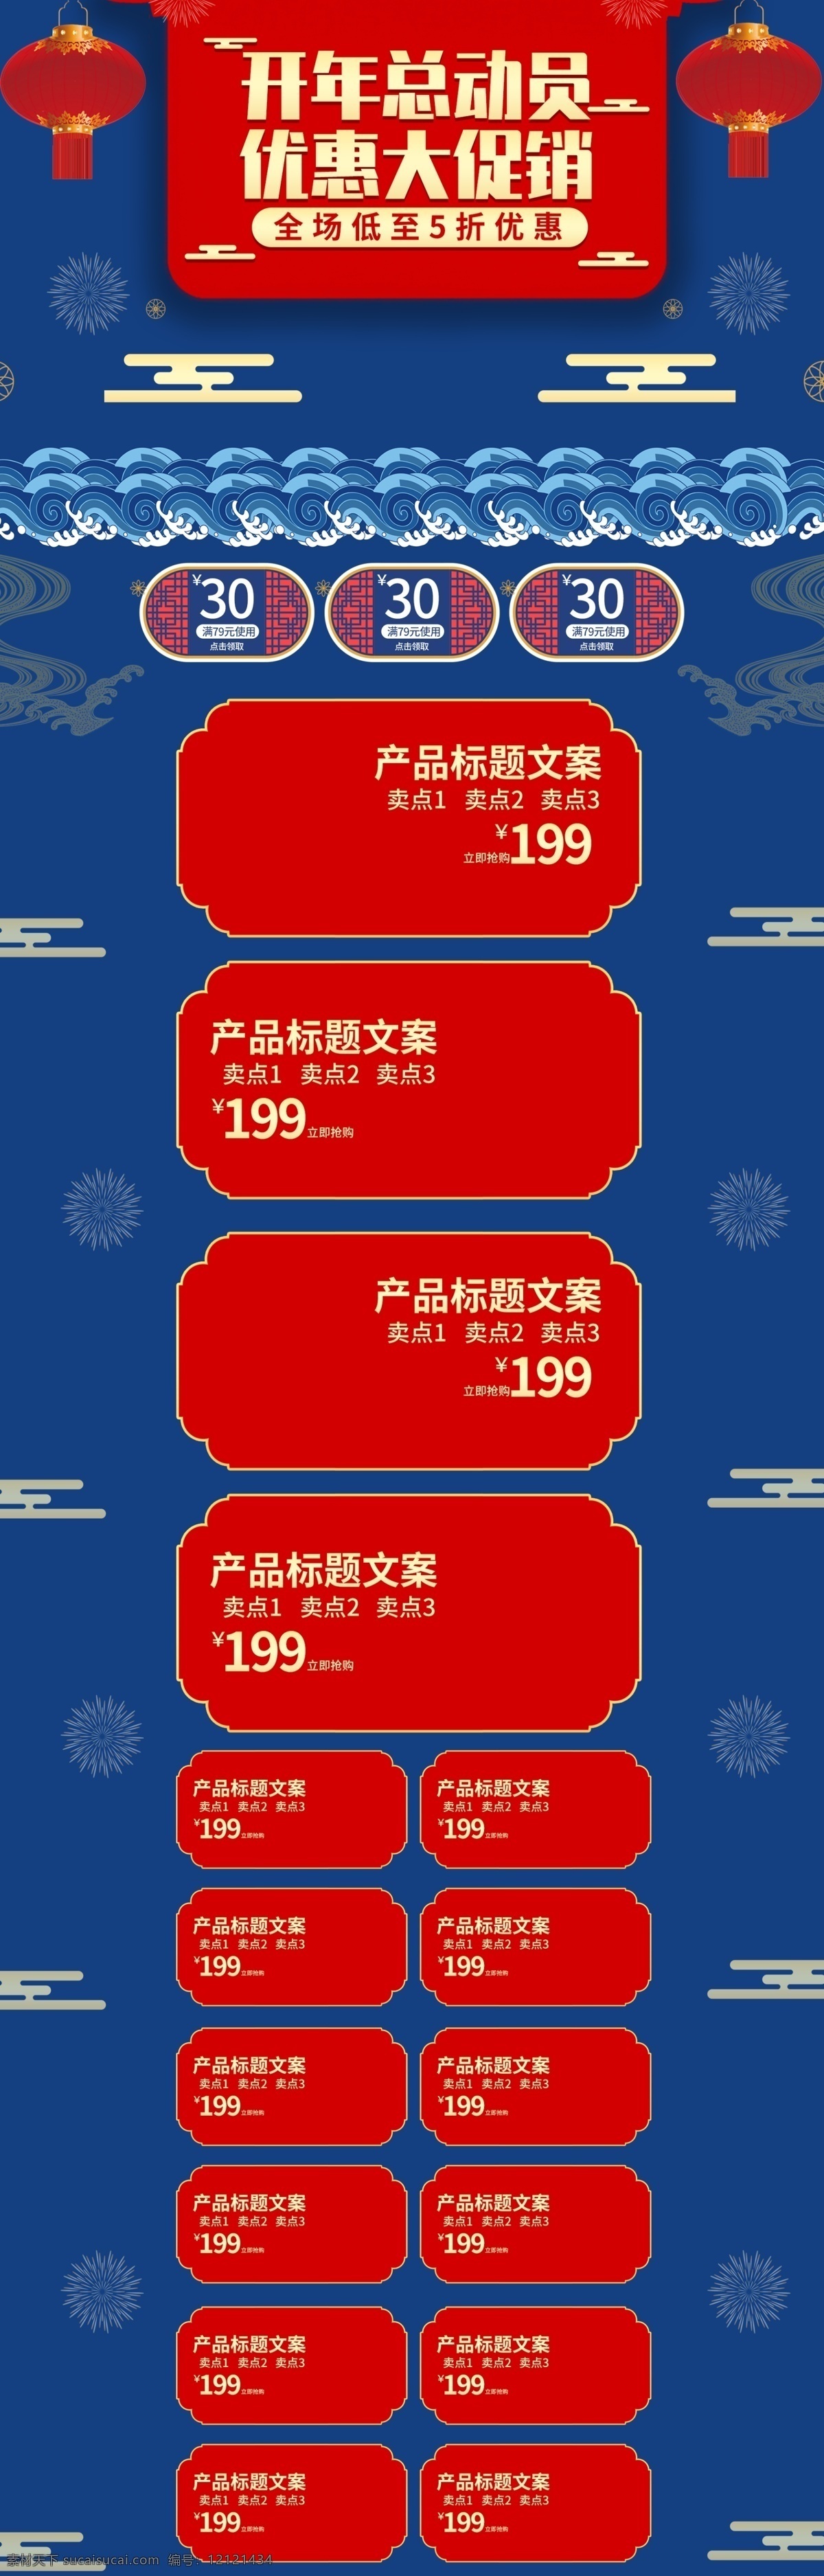 微 立体 中国 风 开年 总动员 活动 促销 电商 首页 中国风 模板 天猫 微立体 开年总动员 活动促销 淘宝